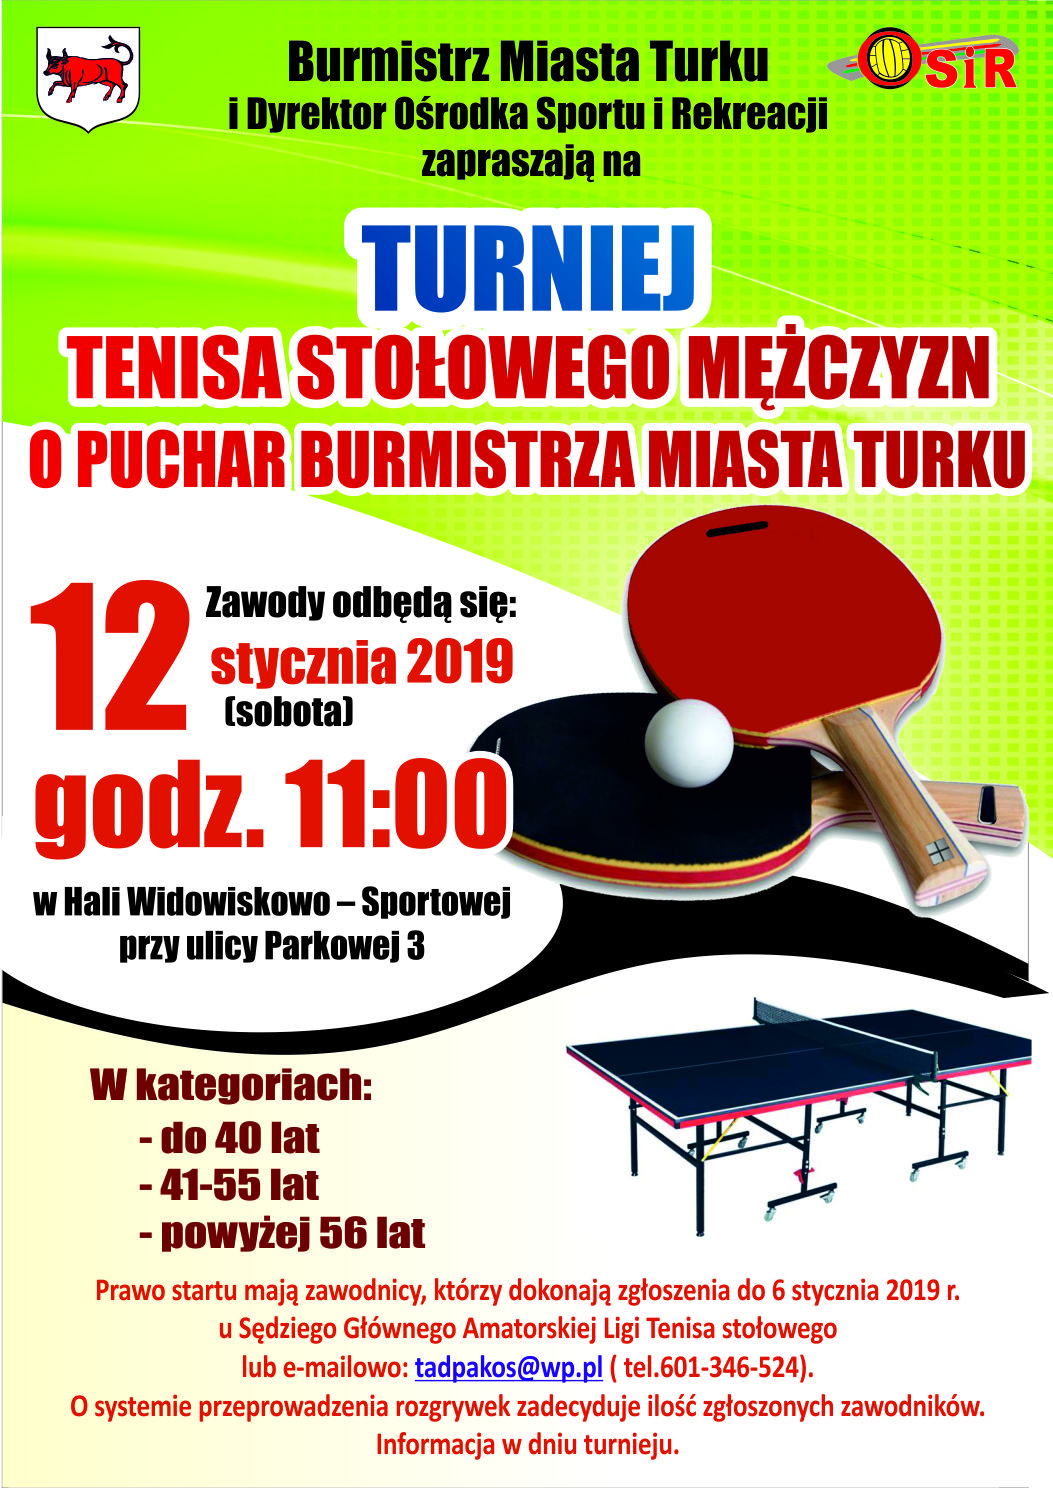 Plakat turnieju Turniej tenisa stołowego Mężczyzn o Puchar Burmistrza Miasta Turku